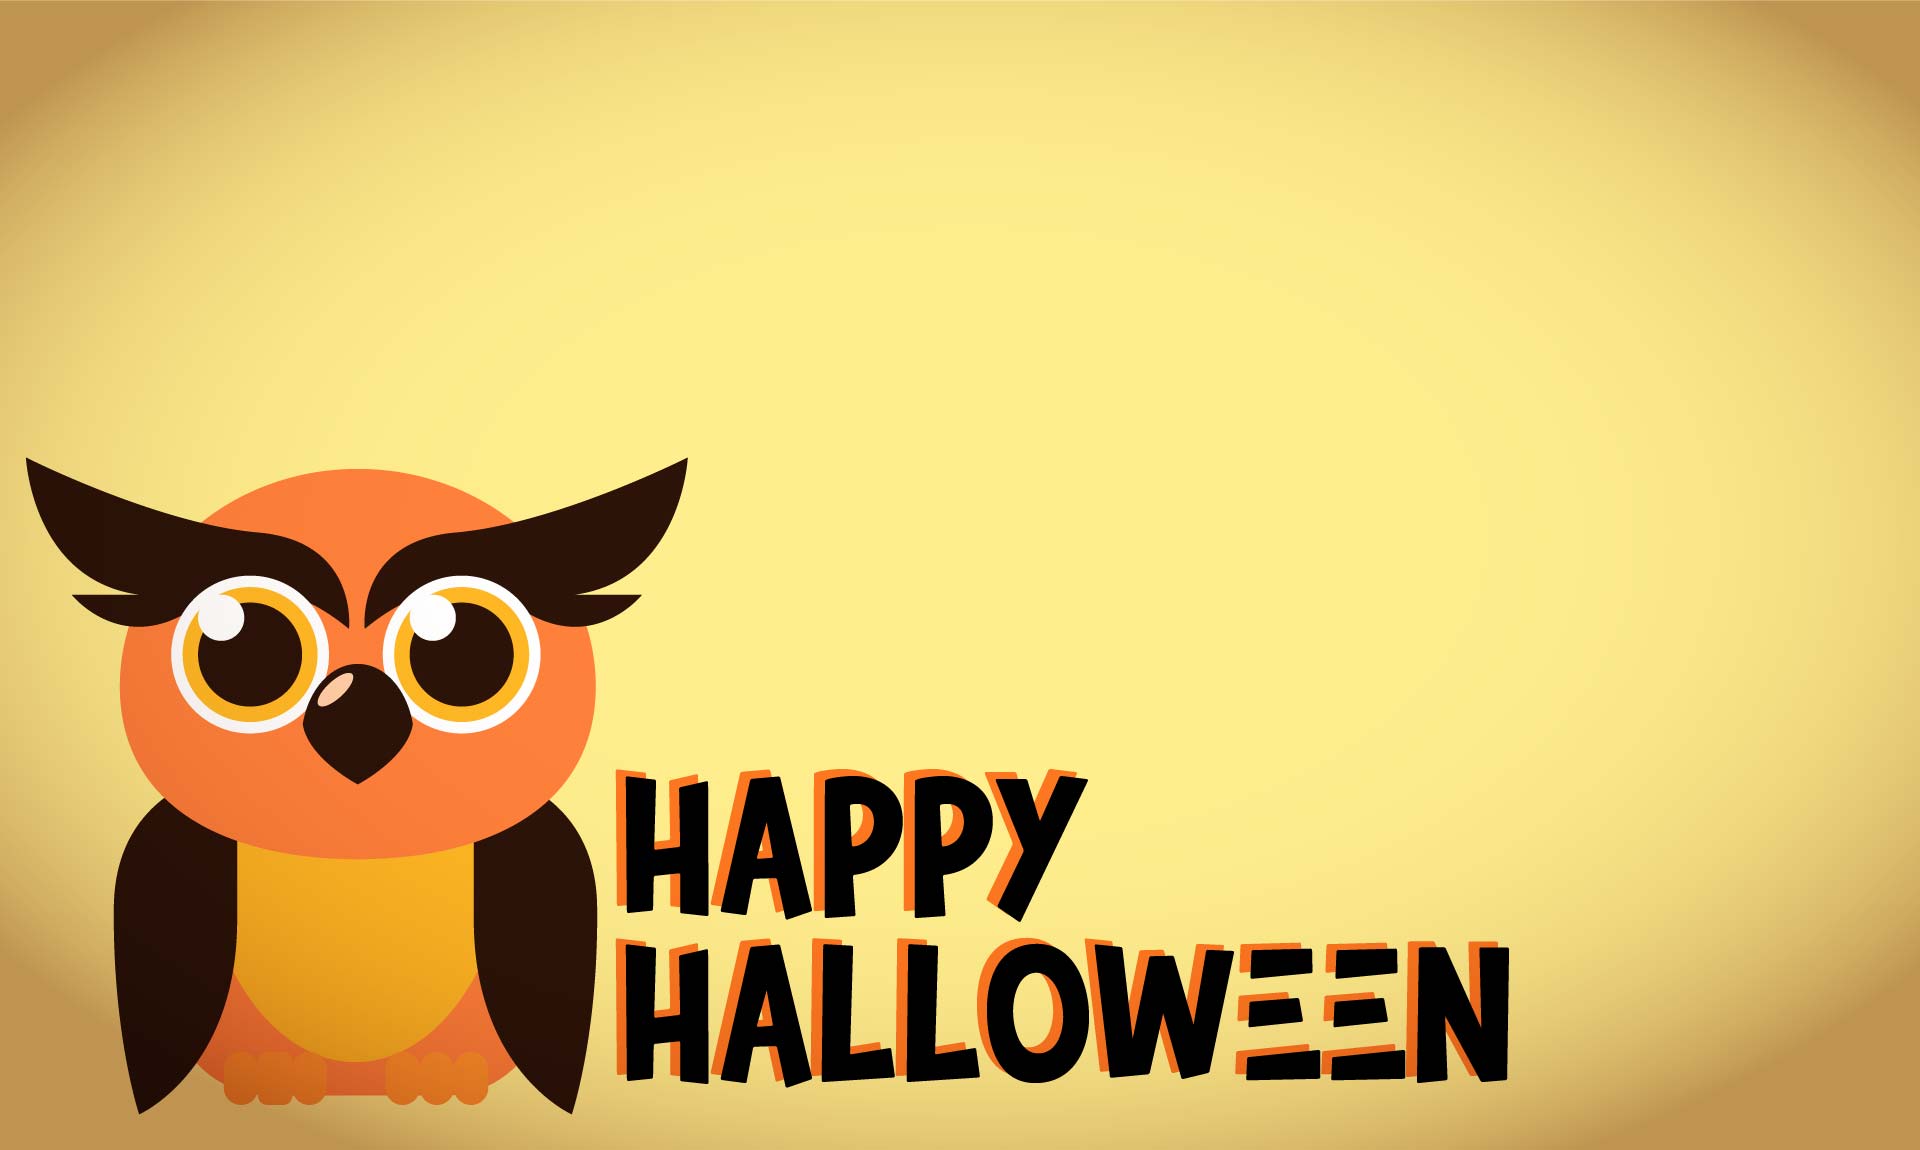 Printable Vintage Cute Owl Halloween Card